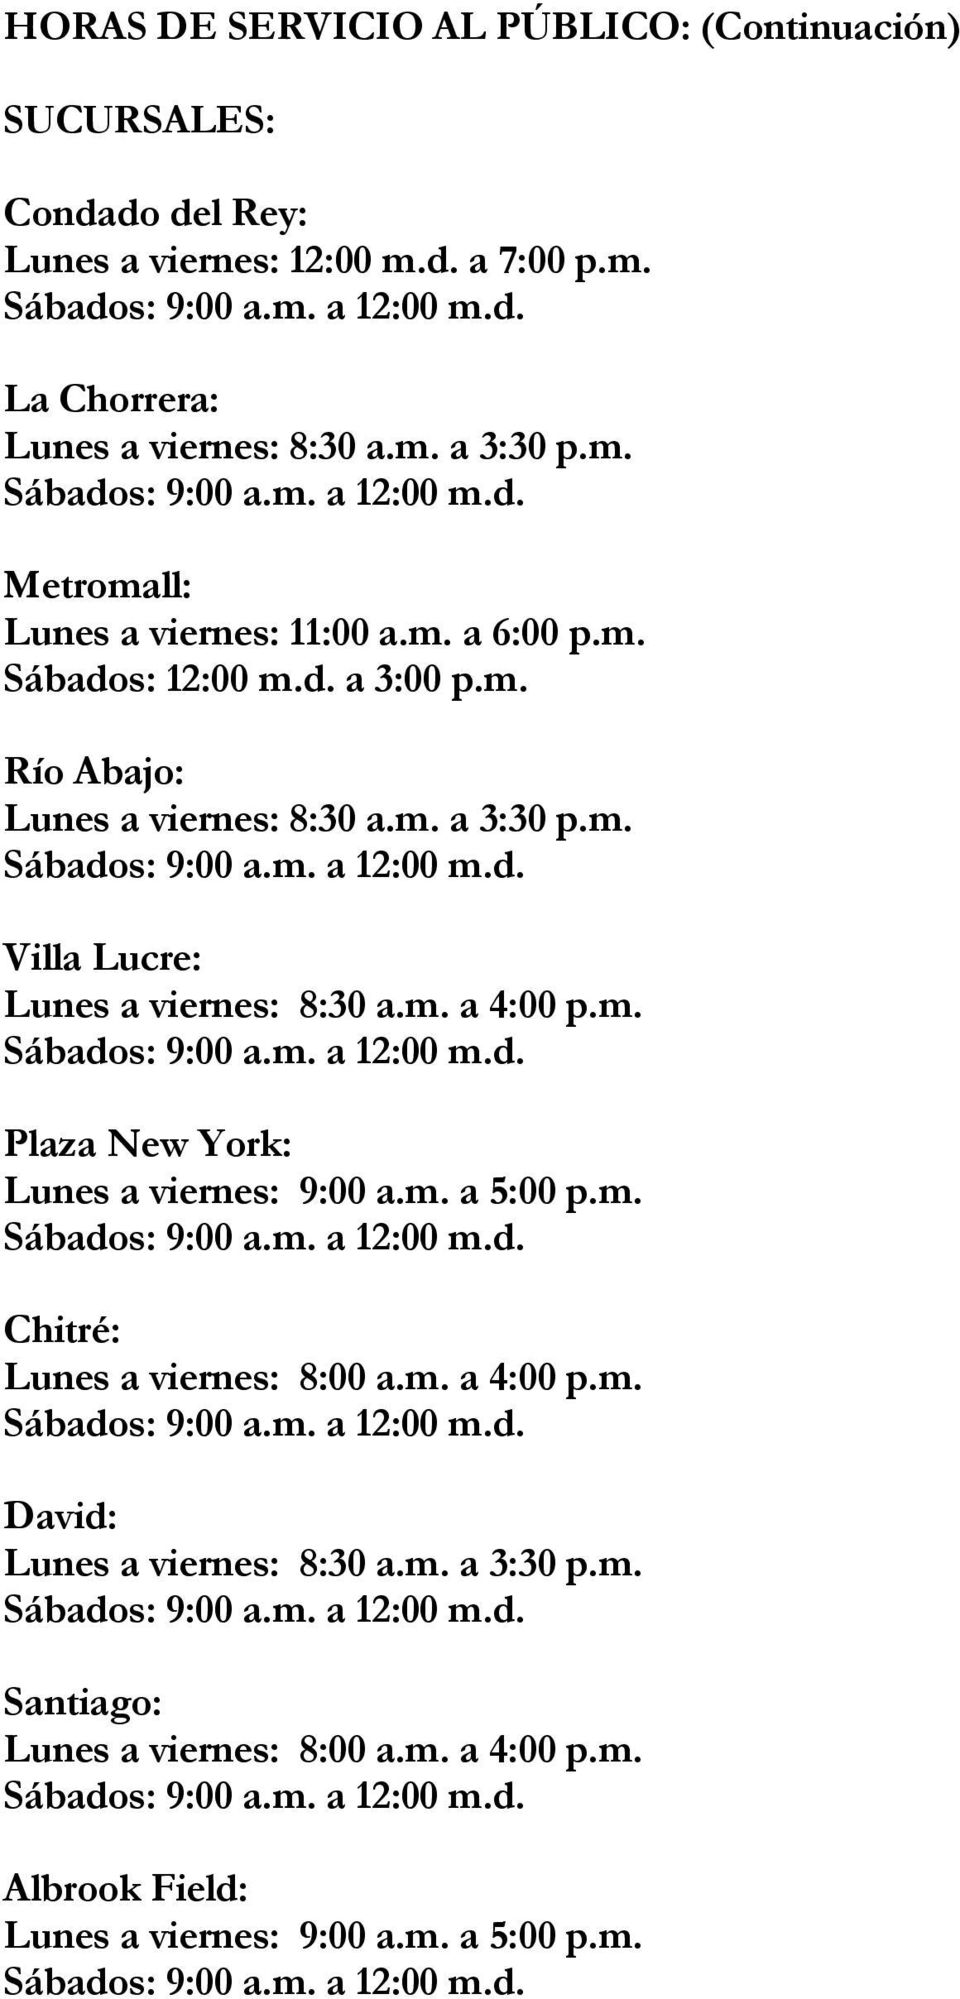 m. a 4:00 p.m. Plaza New York: Lunes a viernes: 9:00 a.m. a 5:00 p.m. Chitré: Lunes a viernes: 8:00 a.m. a 4:00 p.m. David: Santiago: Lunes a viernes: 8:00 a.